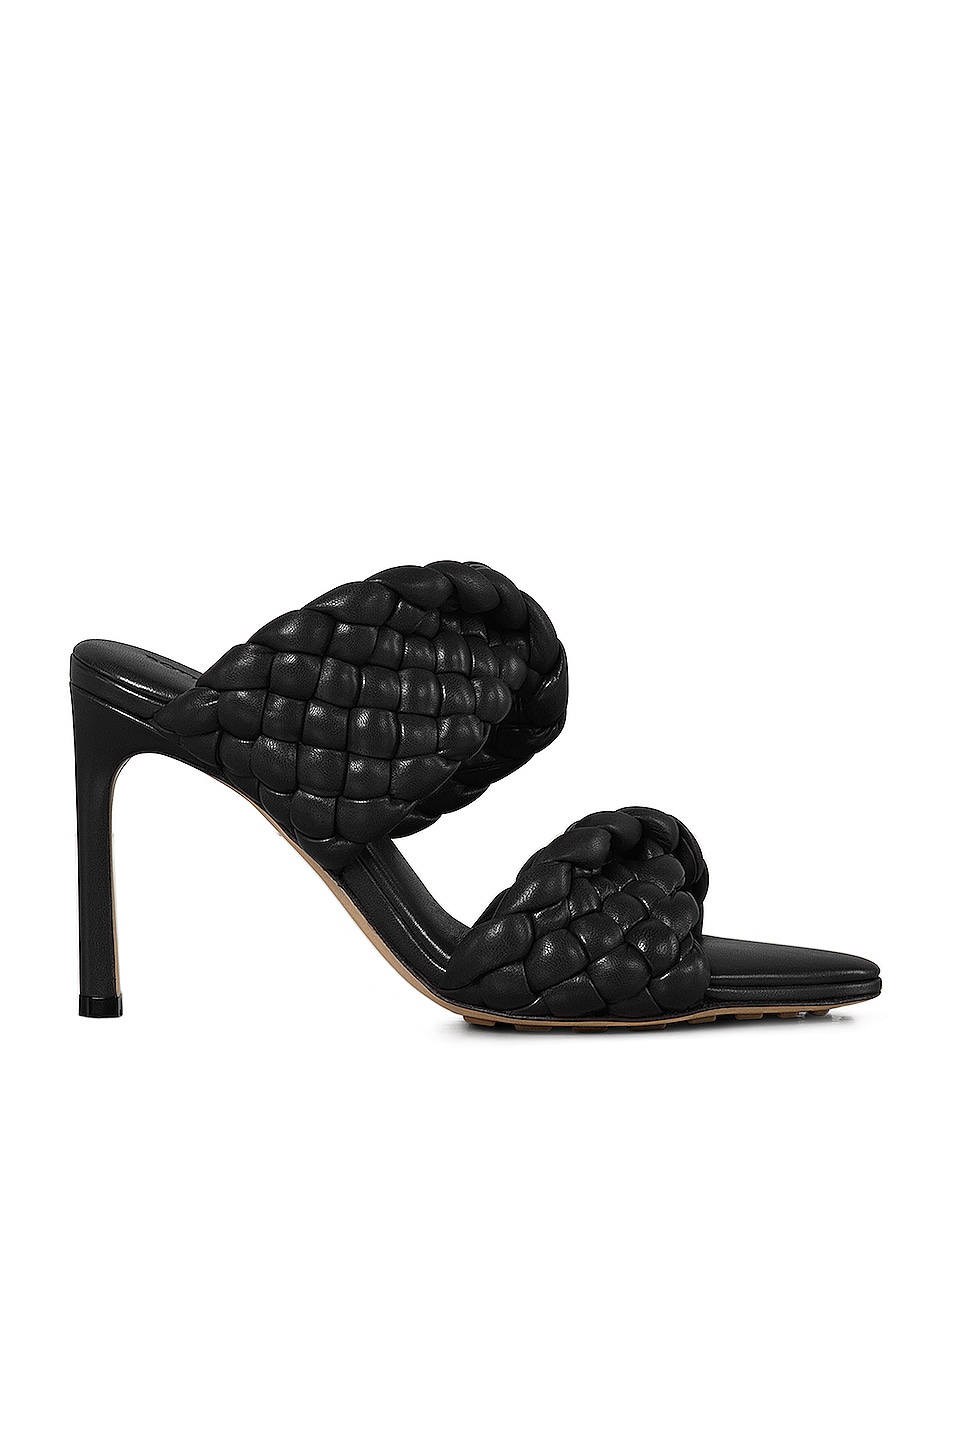 Bottega Veneta Brown Leather Padded Slide Sandals Size 37 